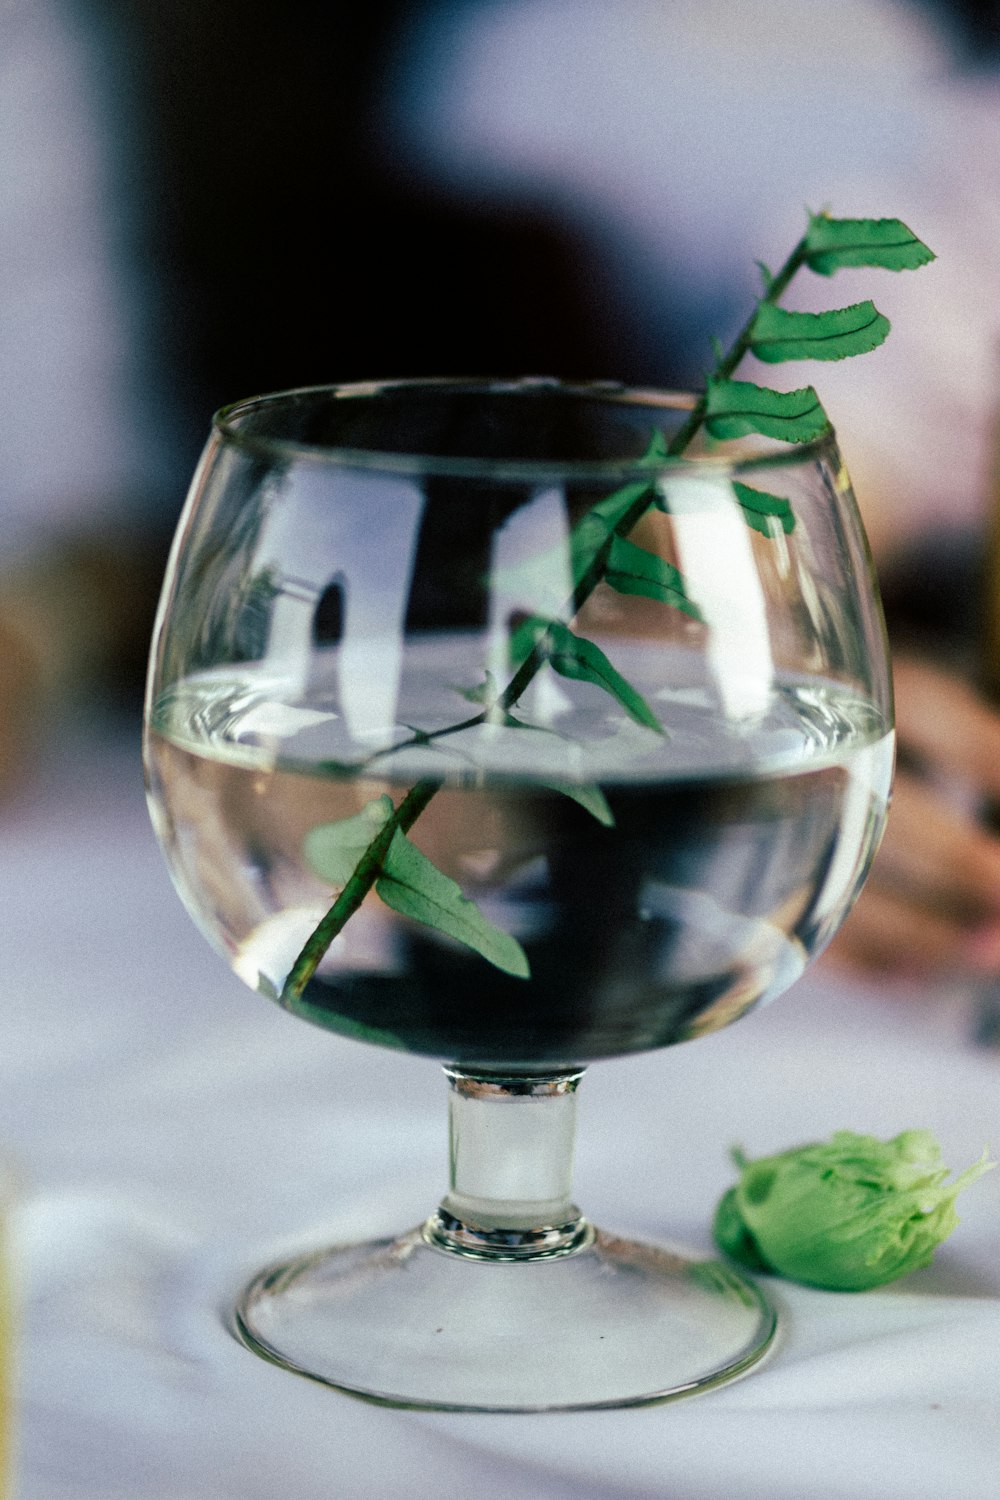 green herb in short-stem glass